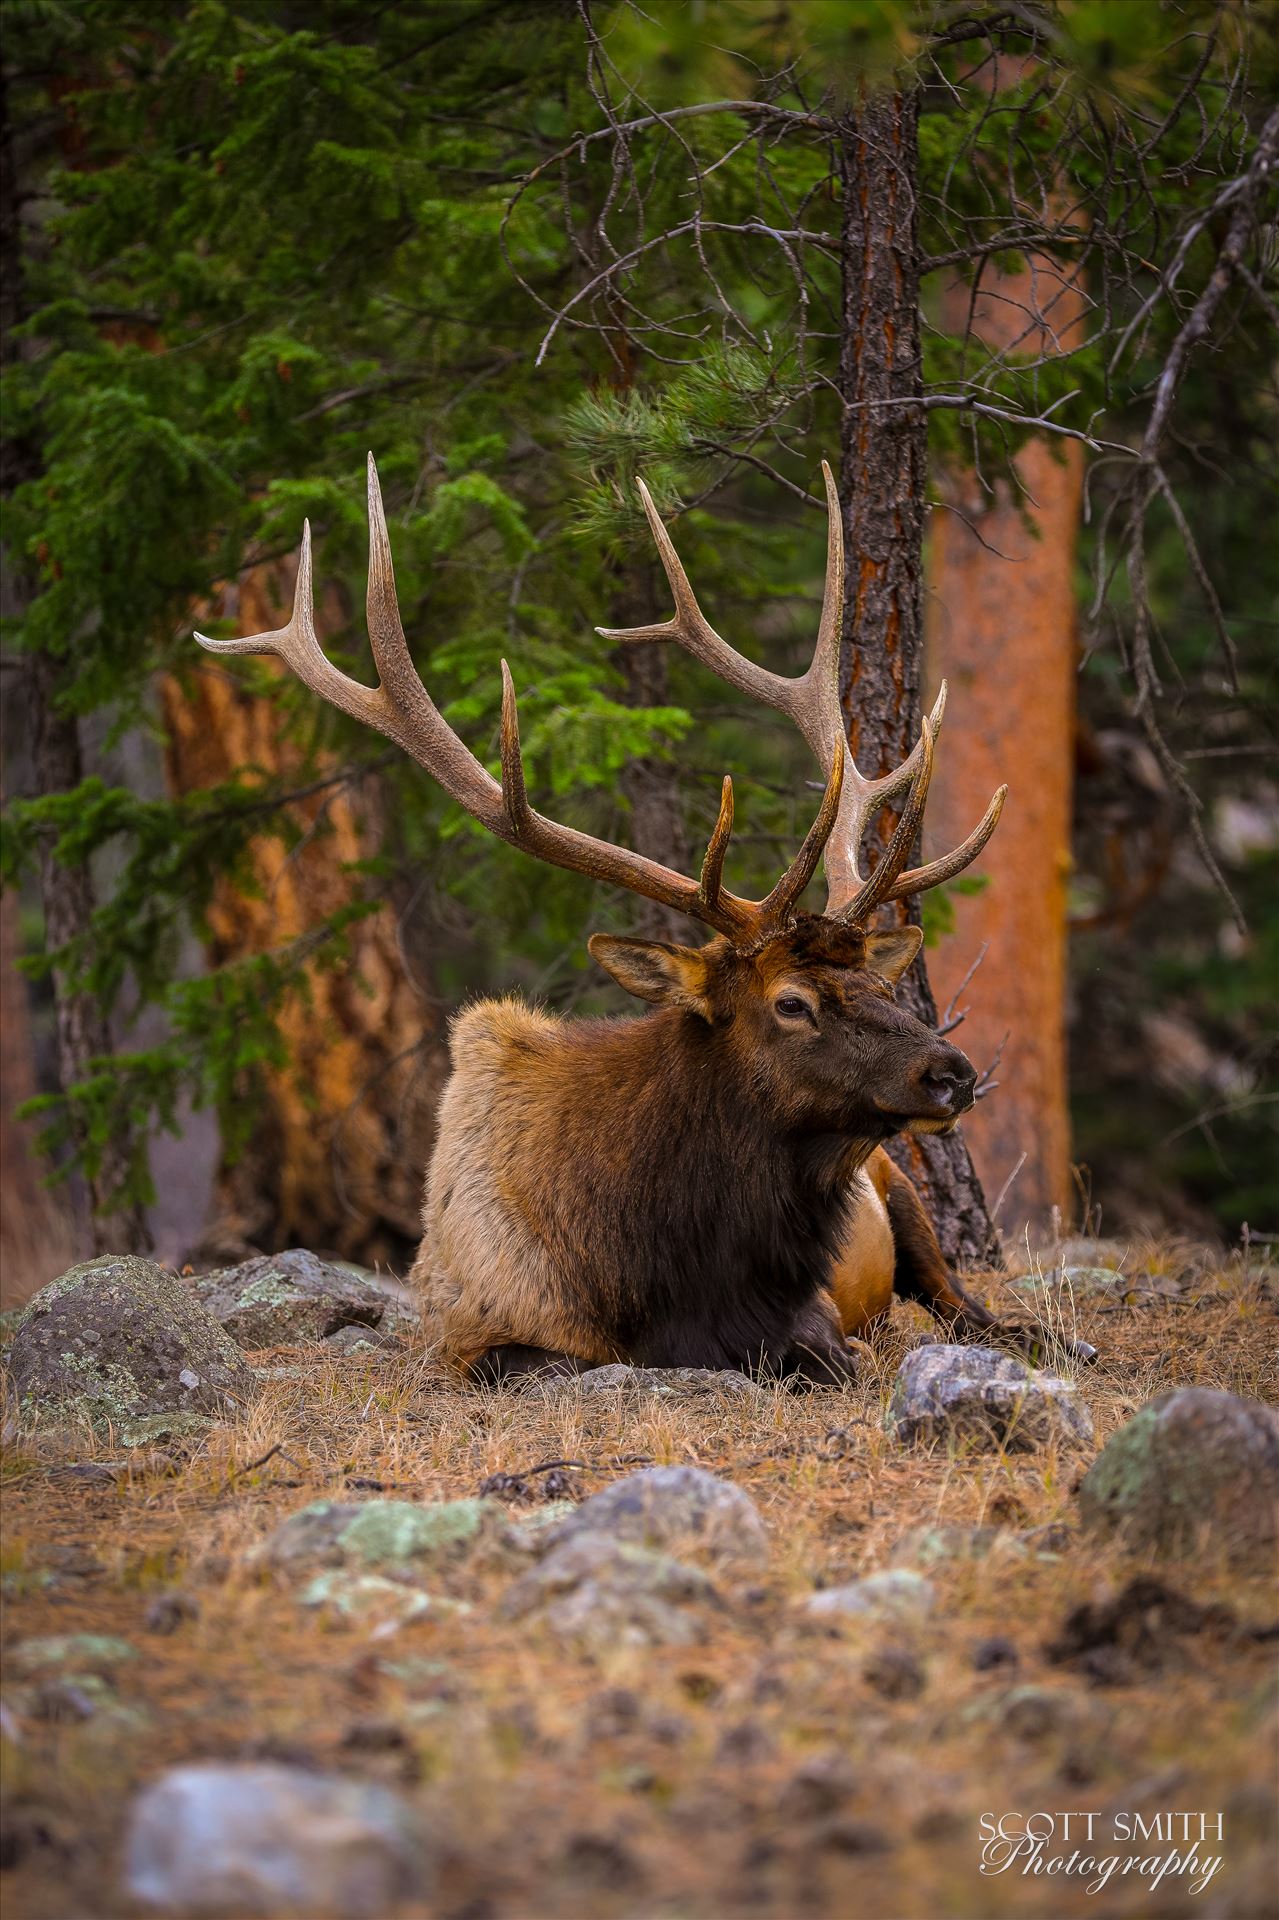 Sunday Elk No 06 - A heard of Elk near the entrance to Rocky Mountain National Park, Estes Park, Colorado. by Scott Smith Photos